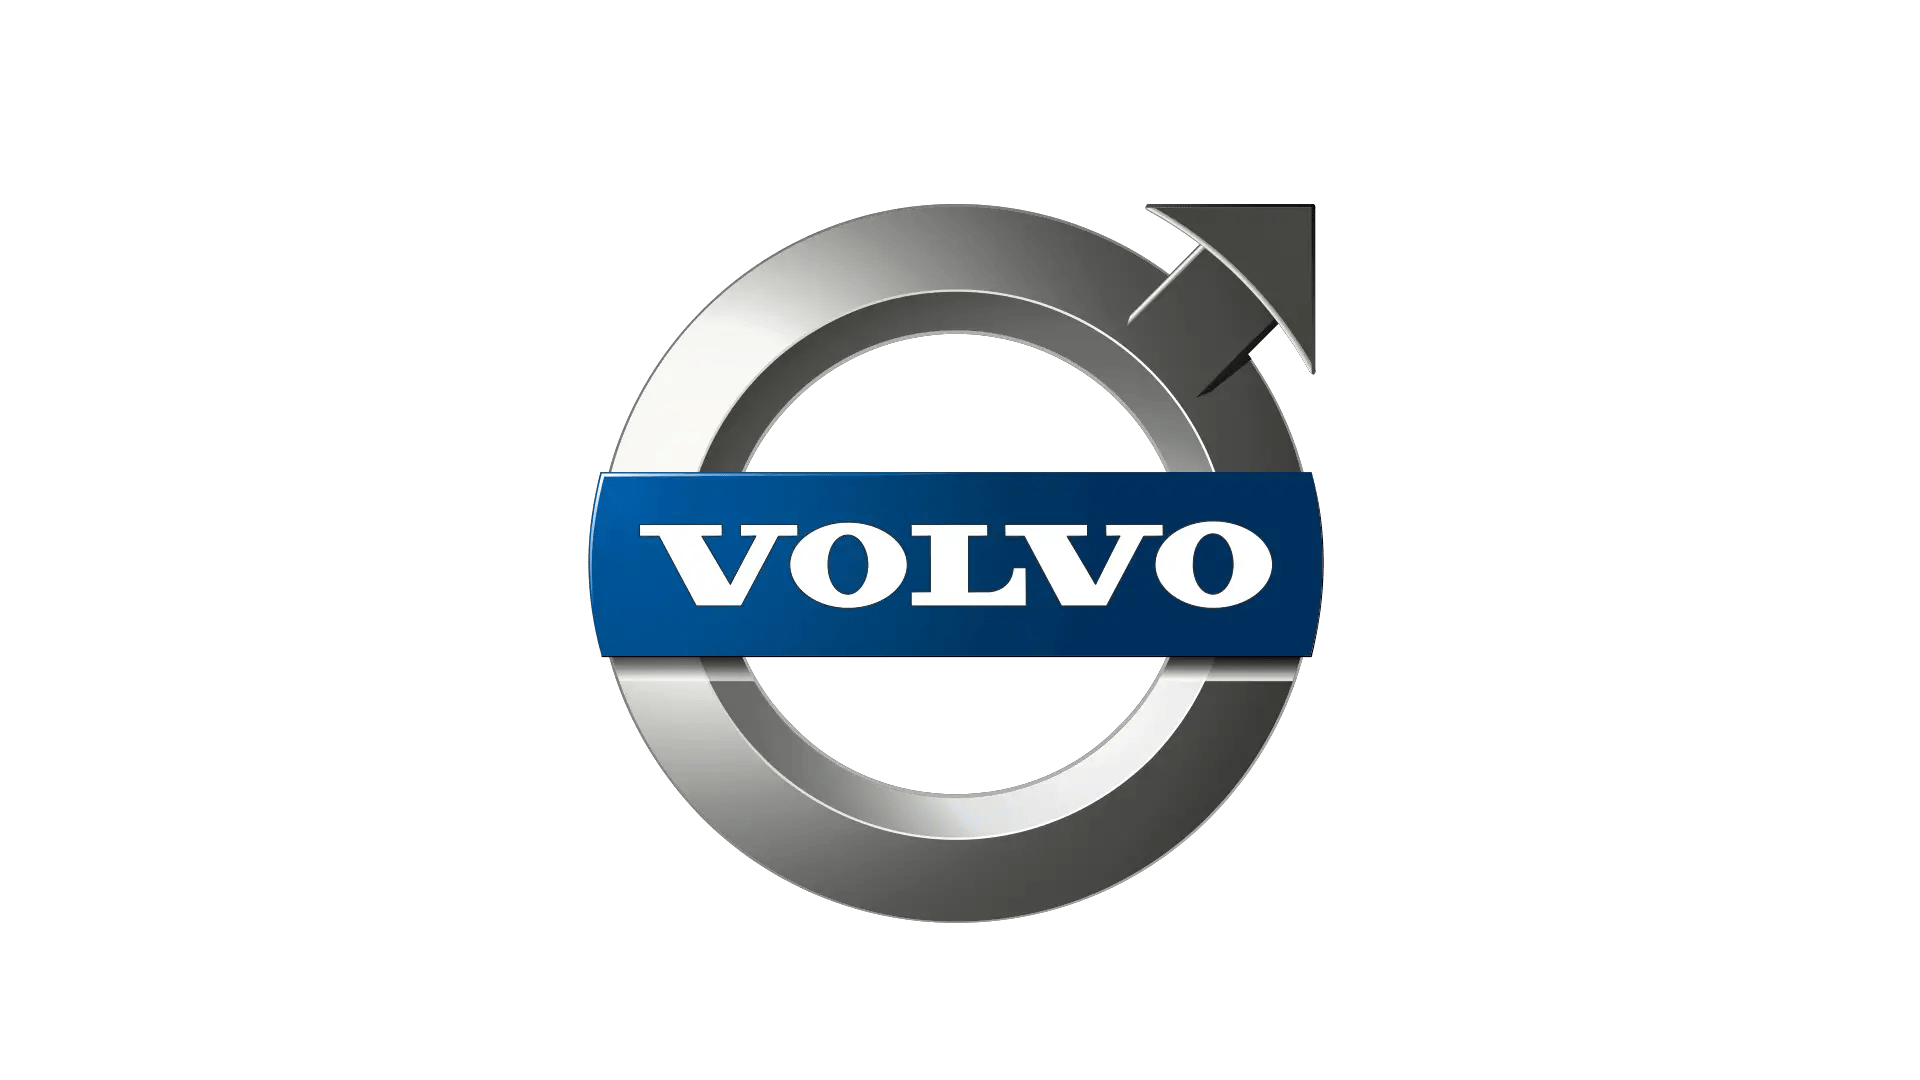 Volvo-logo-2006-1920x1080